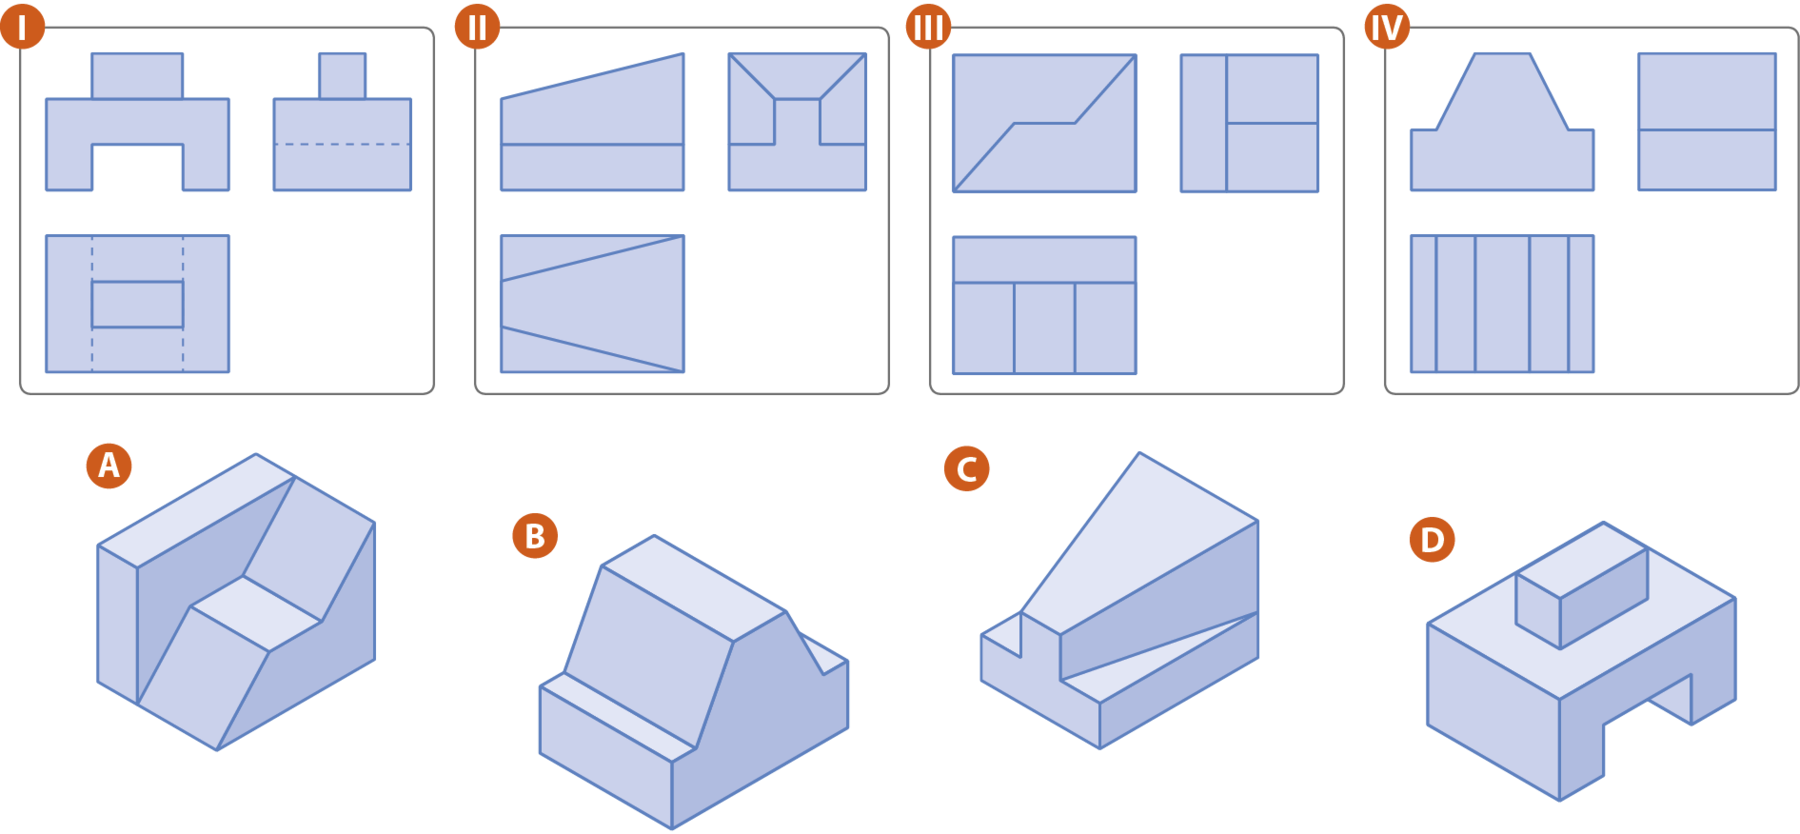 Esquema. Conjunto de figuras 1. Três figuras azuis: a primeira é composta por um retângulo e um polígono não convexo; a segunda, ao lado direito, por um retângulo dividido ao meio por um segmento tracejado e, a terceira, abaixo, por um retângulo maior e um menor centralizado. Esquema. Conjunto de figuras 2. Três figuras azuis: a primeira é composta por um retângulo e um trapézio; a segunda, ao lado direito, é um retângulo dividido em três trapézios e outro polígono com formato de T invertido; e, a terceira, abaixo, é um retângulo dividido em um trapézio ao centro e depois triângulos. Esquema. Conjunto de figuras 3. Três figuras azuis: a primeira é um retângulo dividido por um fio que forma dois outros polígonos de 5 lados; a segunda, ao lado direito, é um retângulo dividido em três retângulos, sendo dois congruentes; e, a terceira, abaixo, é um retângulo dividido em quatro retângulos, sendo 3 congruentes. Esquema. Conjunto de figuras 4. Três figuras azuis: a primeira é composta por um retângulo e um trapézio; a segunda, ao lado direito, é um retângulo dividido ao meio por um segmento de reta; e, a terceira, abaixo, é um retângulo dividido em outros 5 retângulos. Esquema. Sólido geométrico A: composto por um paralelepípedo e outro prisma com formato de rampa. Esquema. Sólido geométrico B: composto por um paralelepípedo na base e outro prisma bases no formato de trapézio. Esquema. Sólido geométrico C: composto por um paralelepípedo na base e um tronco de pirâmide acima. Esquema. Sólido geométrico D: composto por um poliedro não convexo em formato de U invertido e um paralelepípedo pequeno em cima.